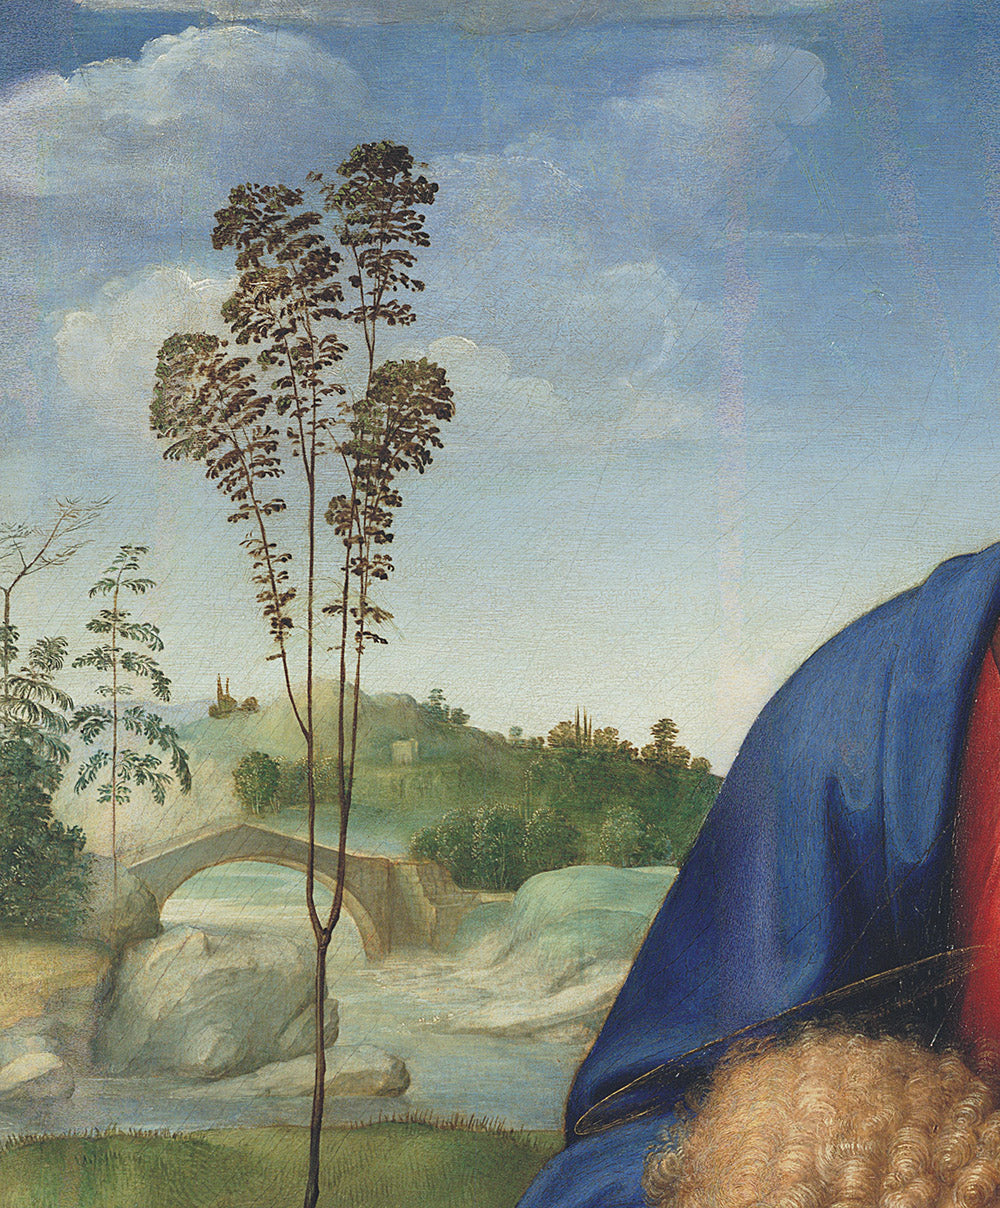 The Uffizi Masterpieces